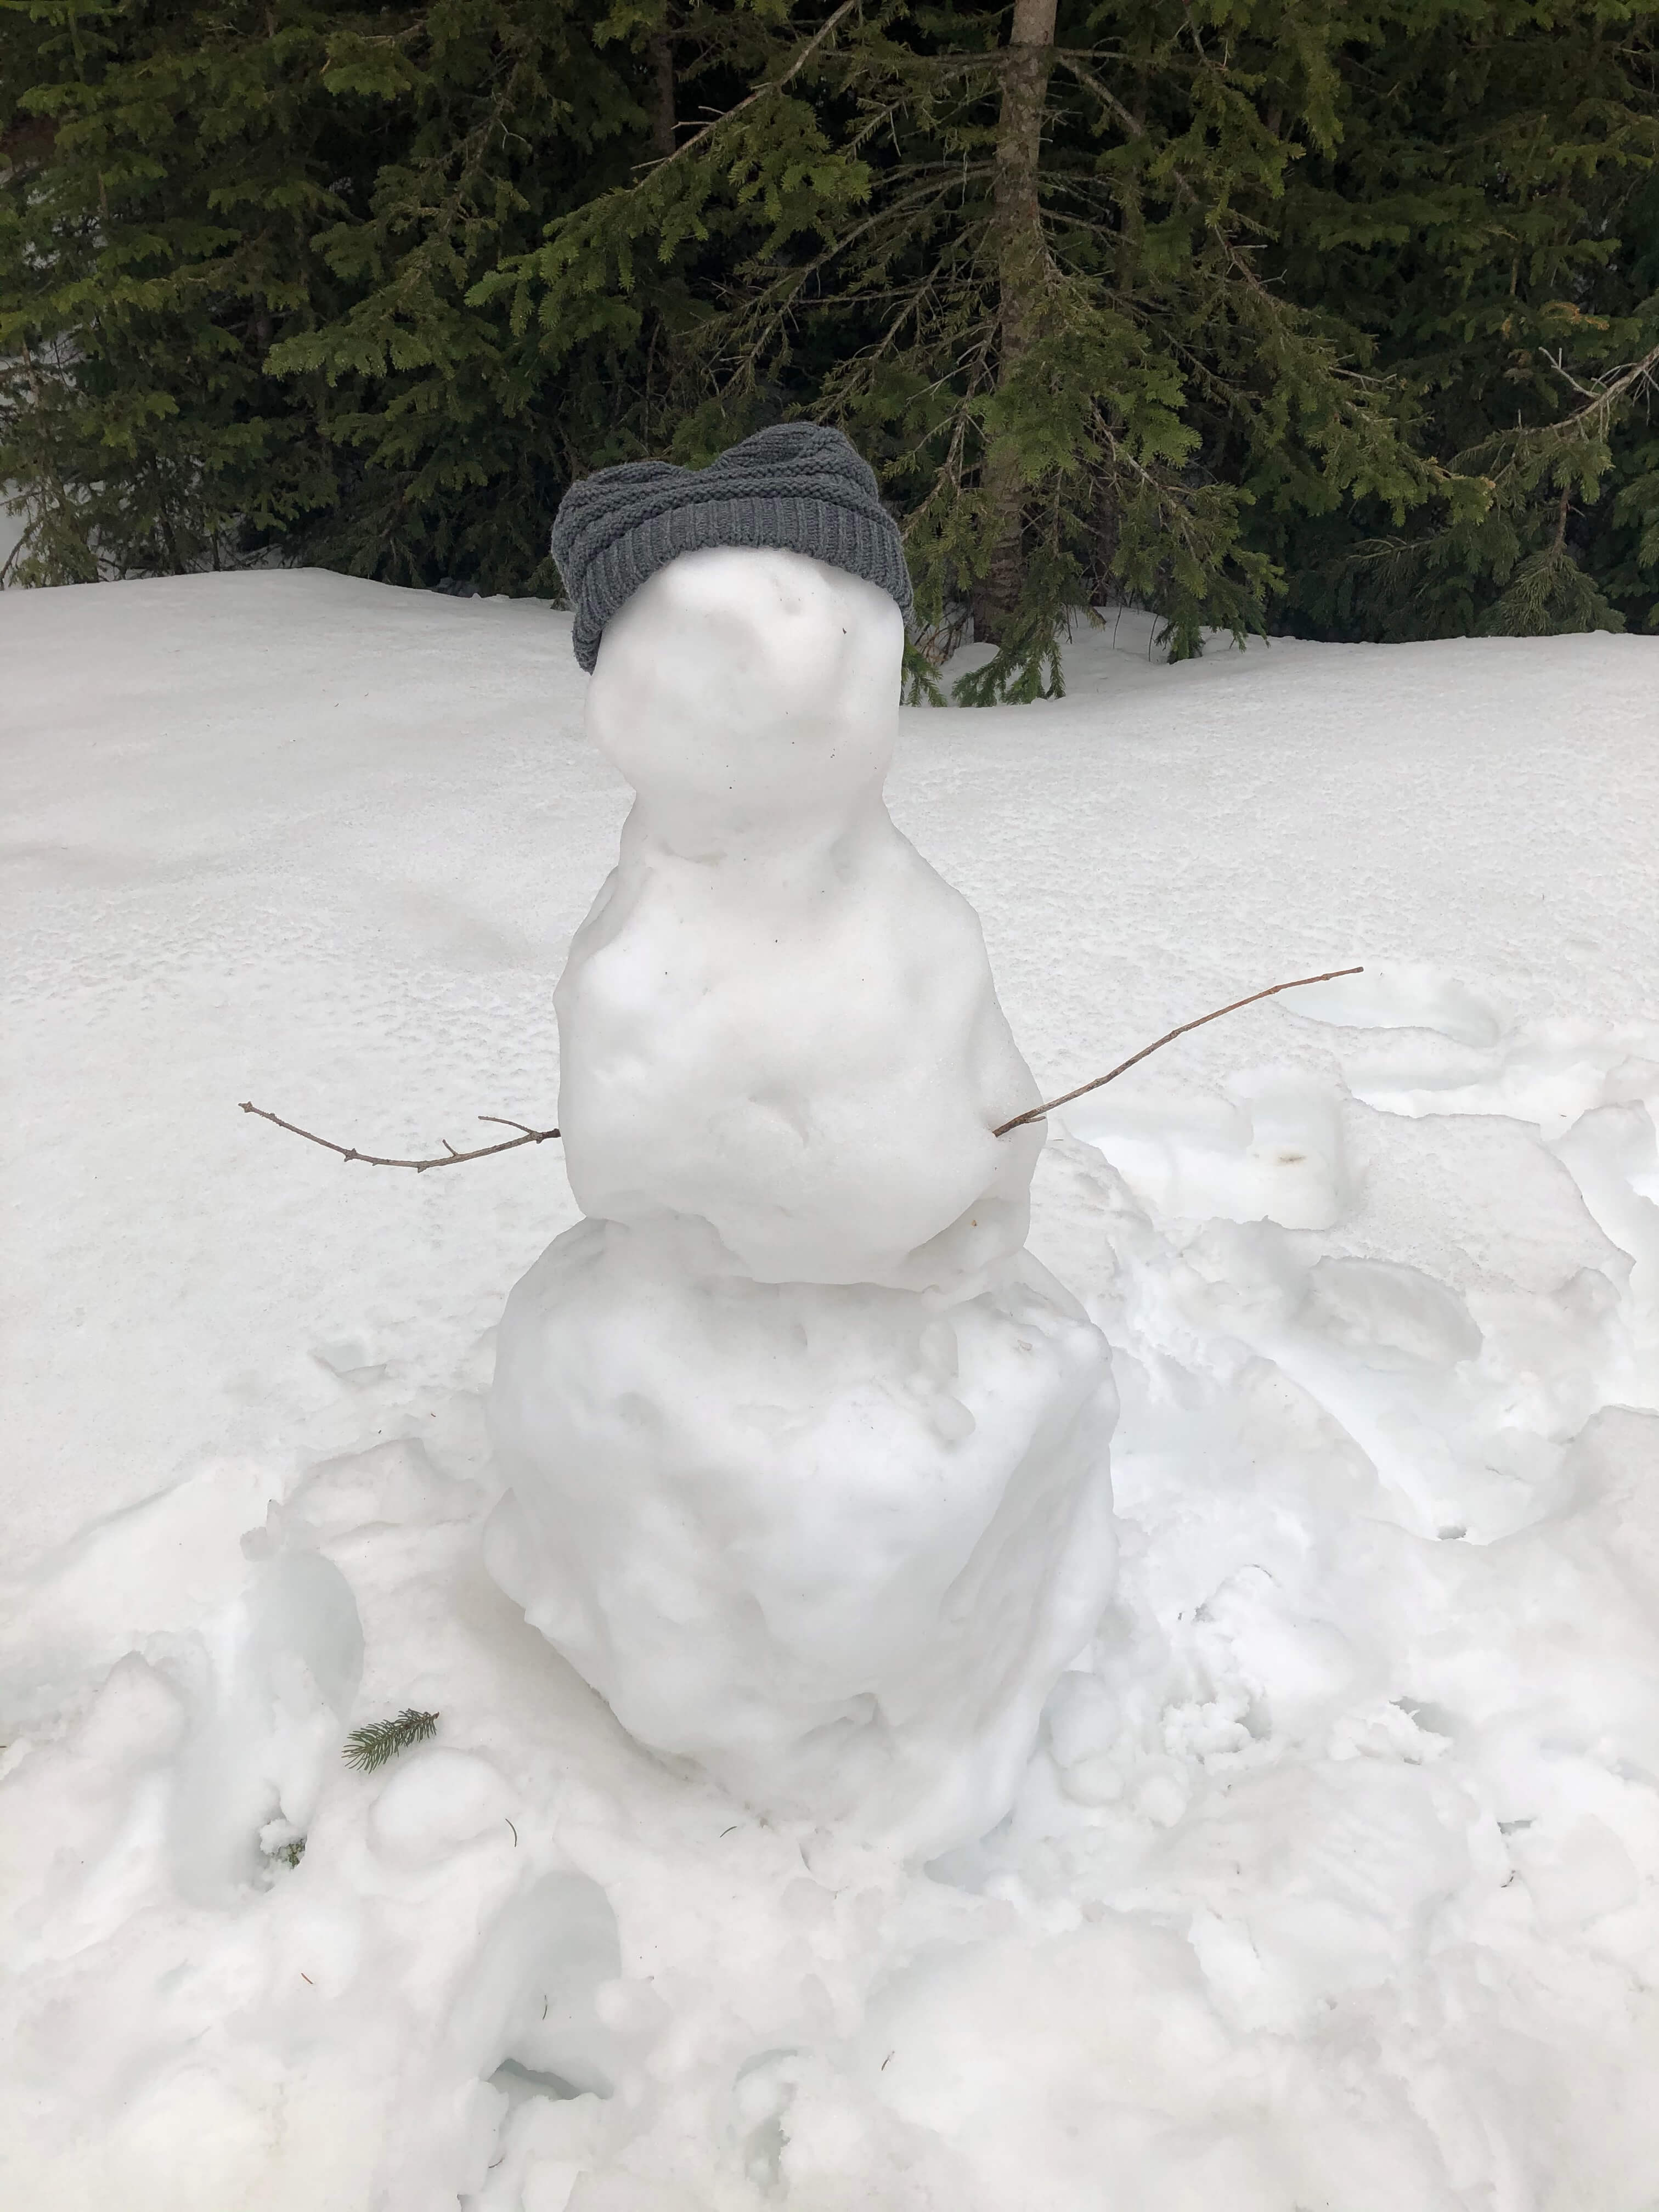 Melting snowman at Sylvan Lake